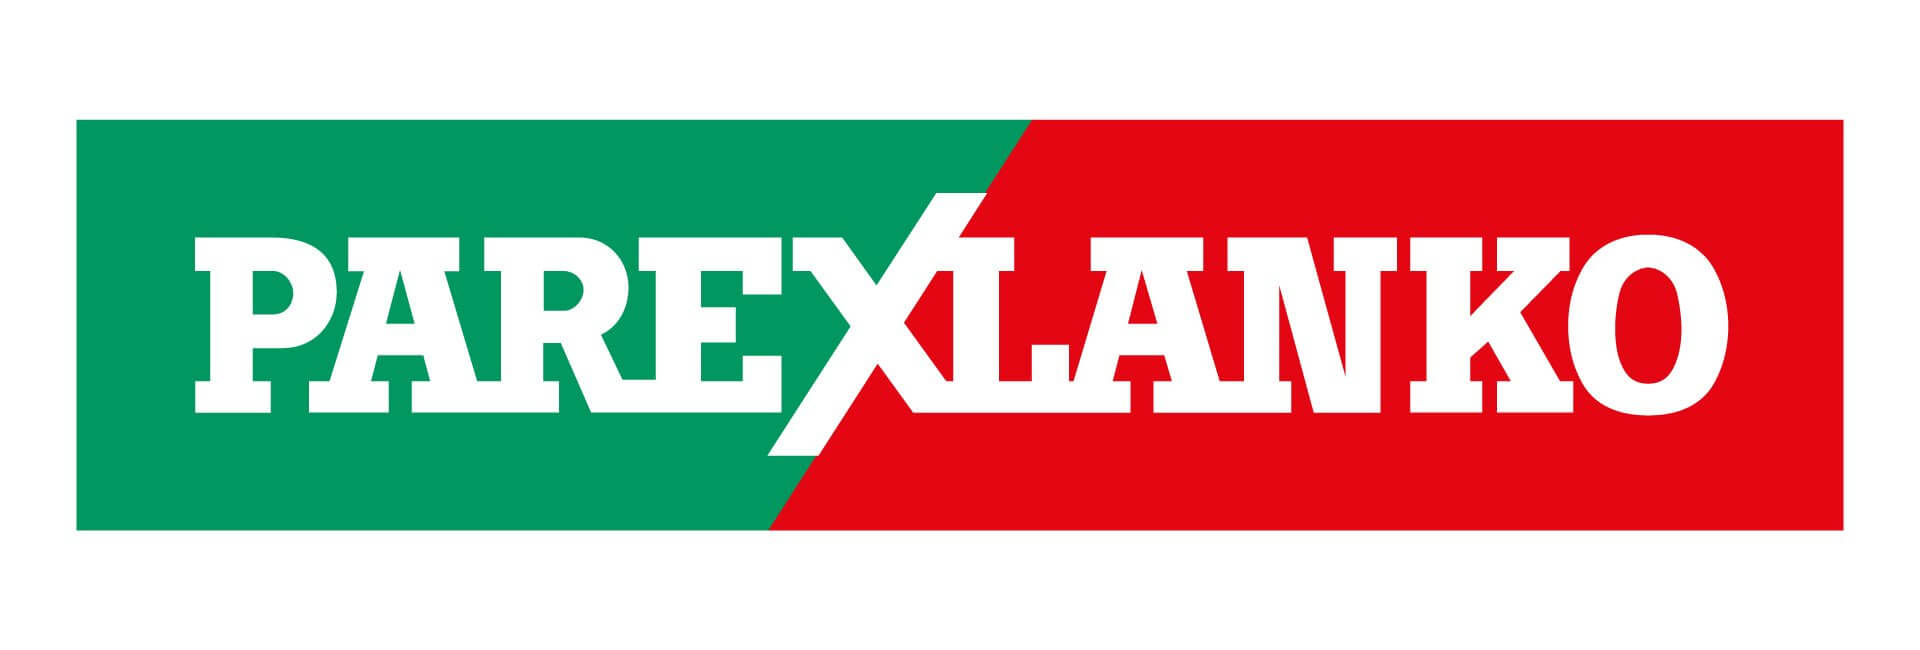 Logo PAREXLANKO